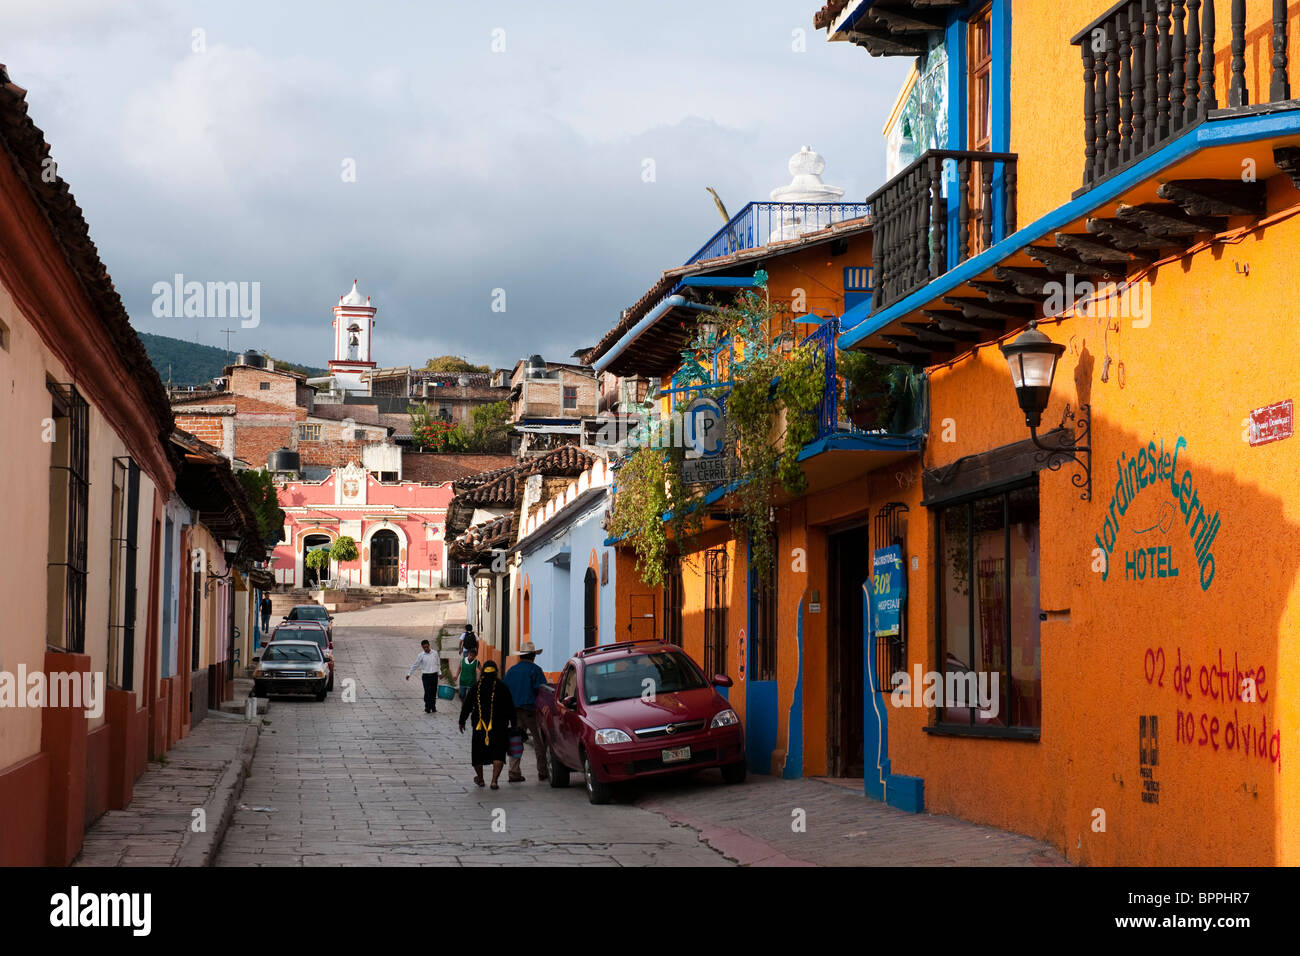 Street scene, San Cristobal de las Casas, Chiapas, Mexico Stock Photo